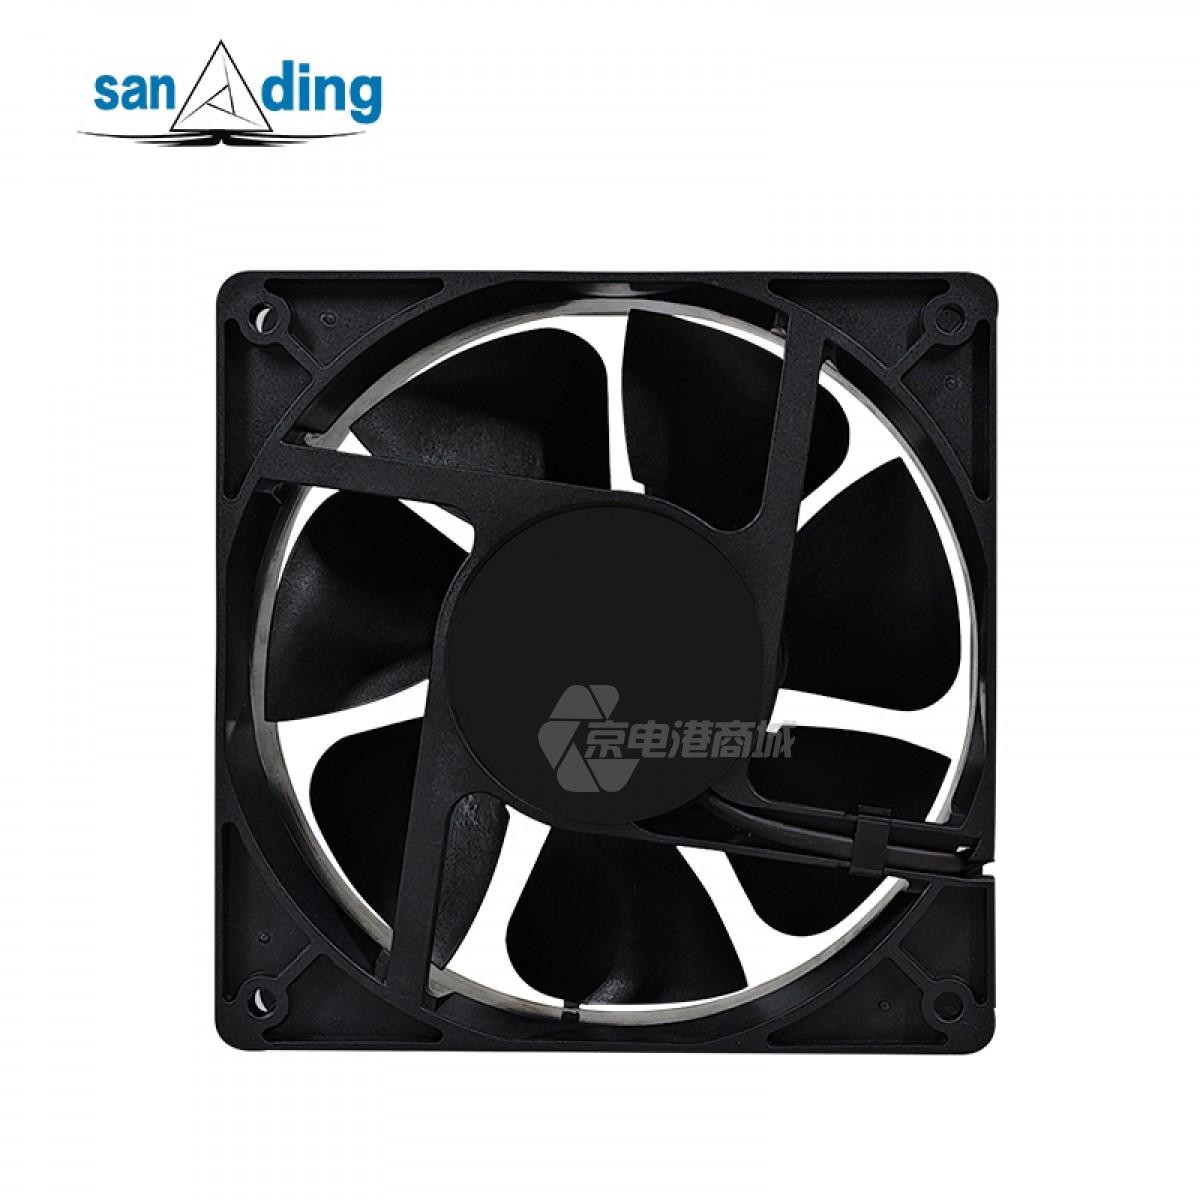 sanding A5415N-23L-B05 220V 0.16A 23W 2600rpm 135×135×38mm 2-wire Metal frame AC fan